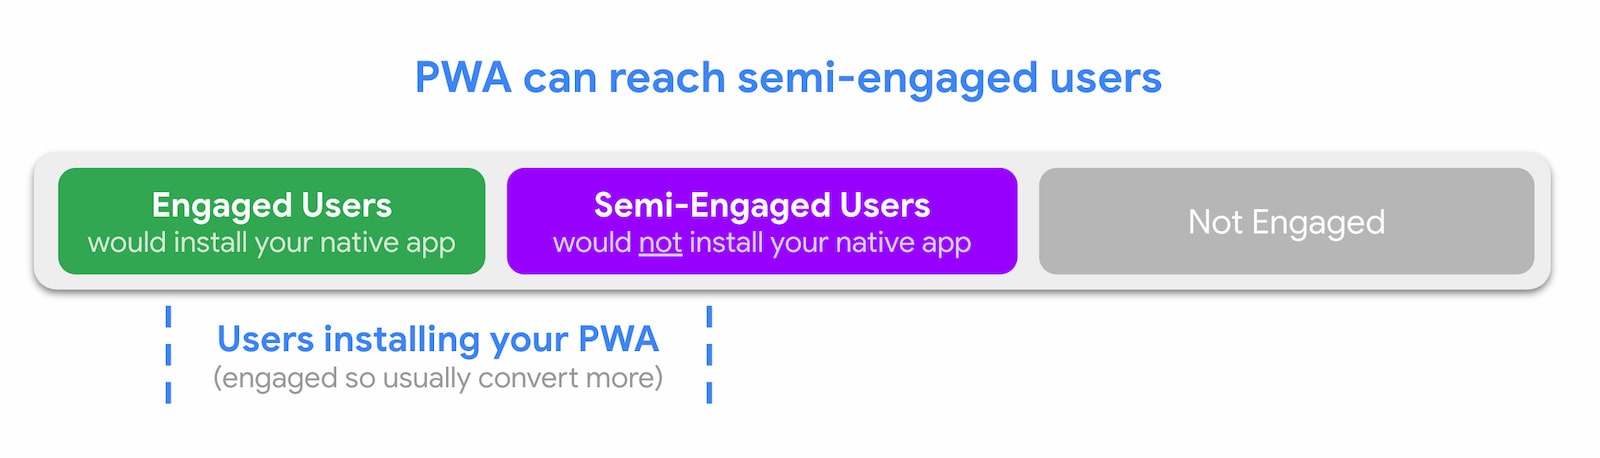 PWA は、準エンゲージメントのユーザーにリーチできる。